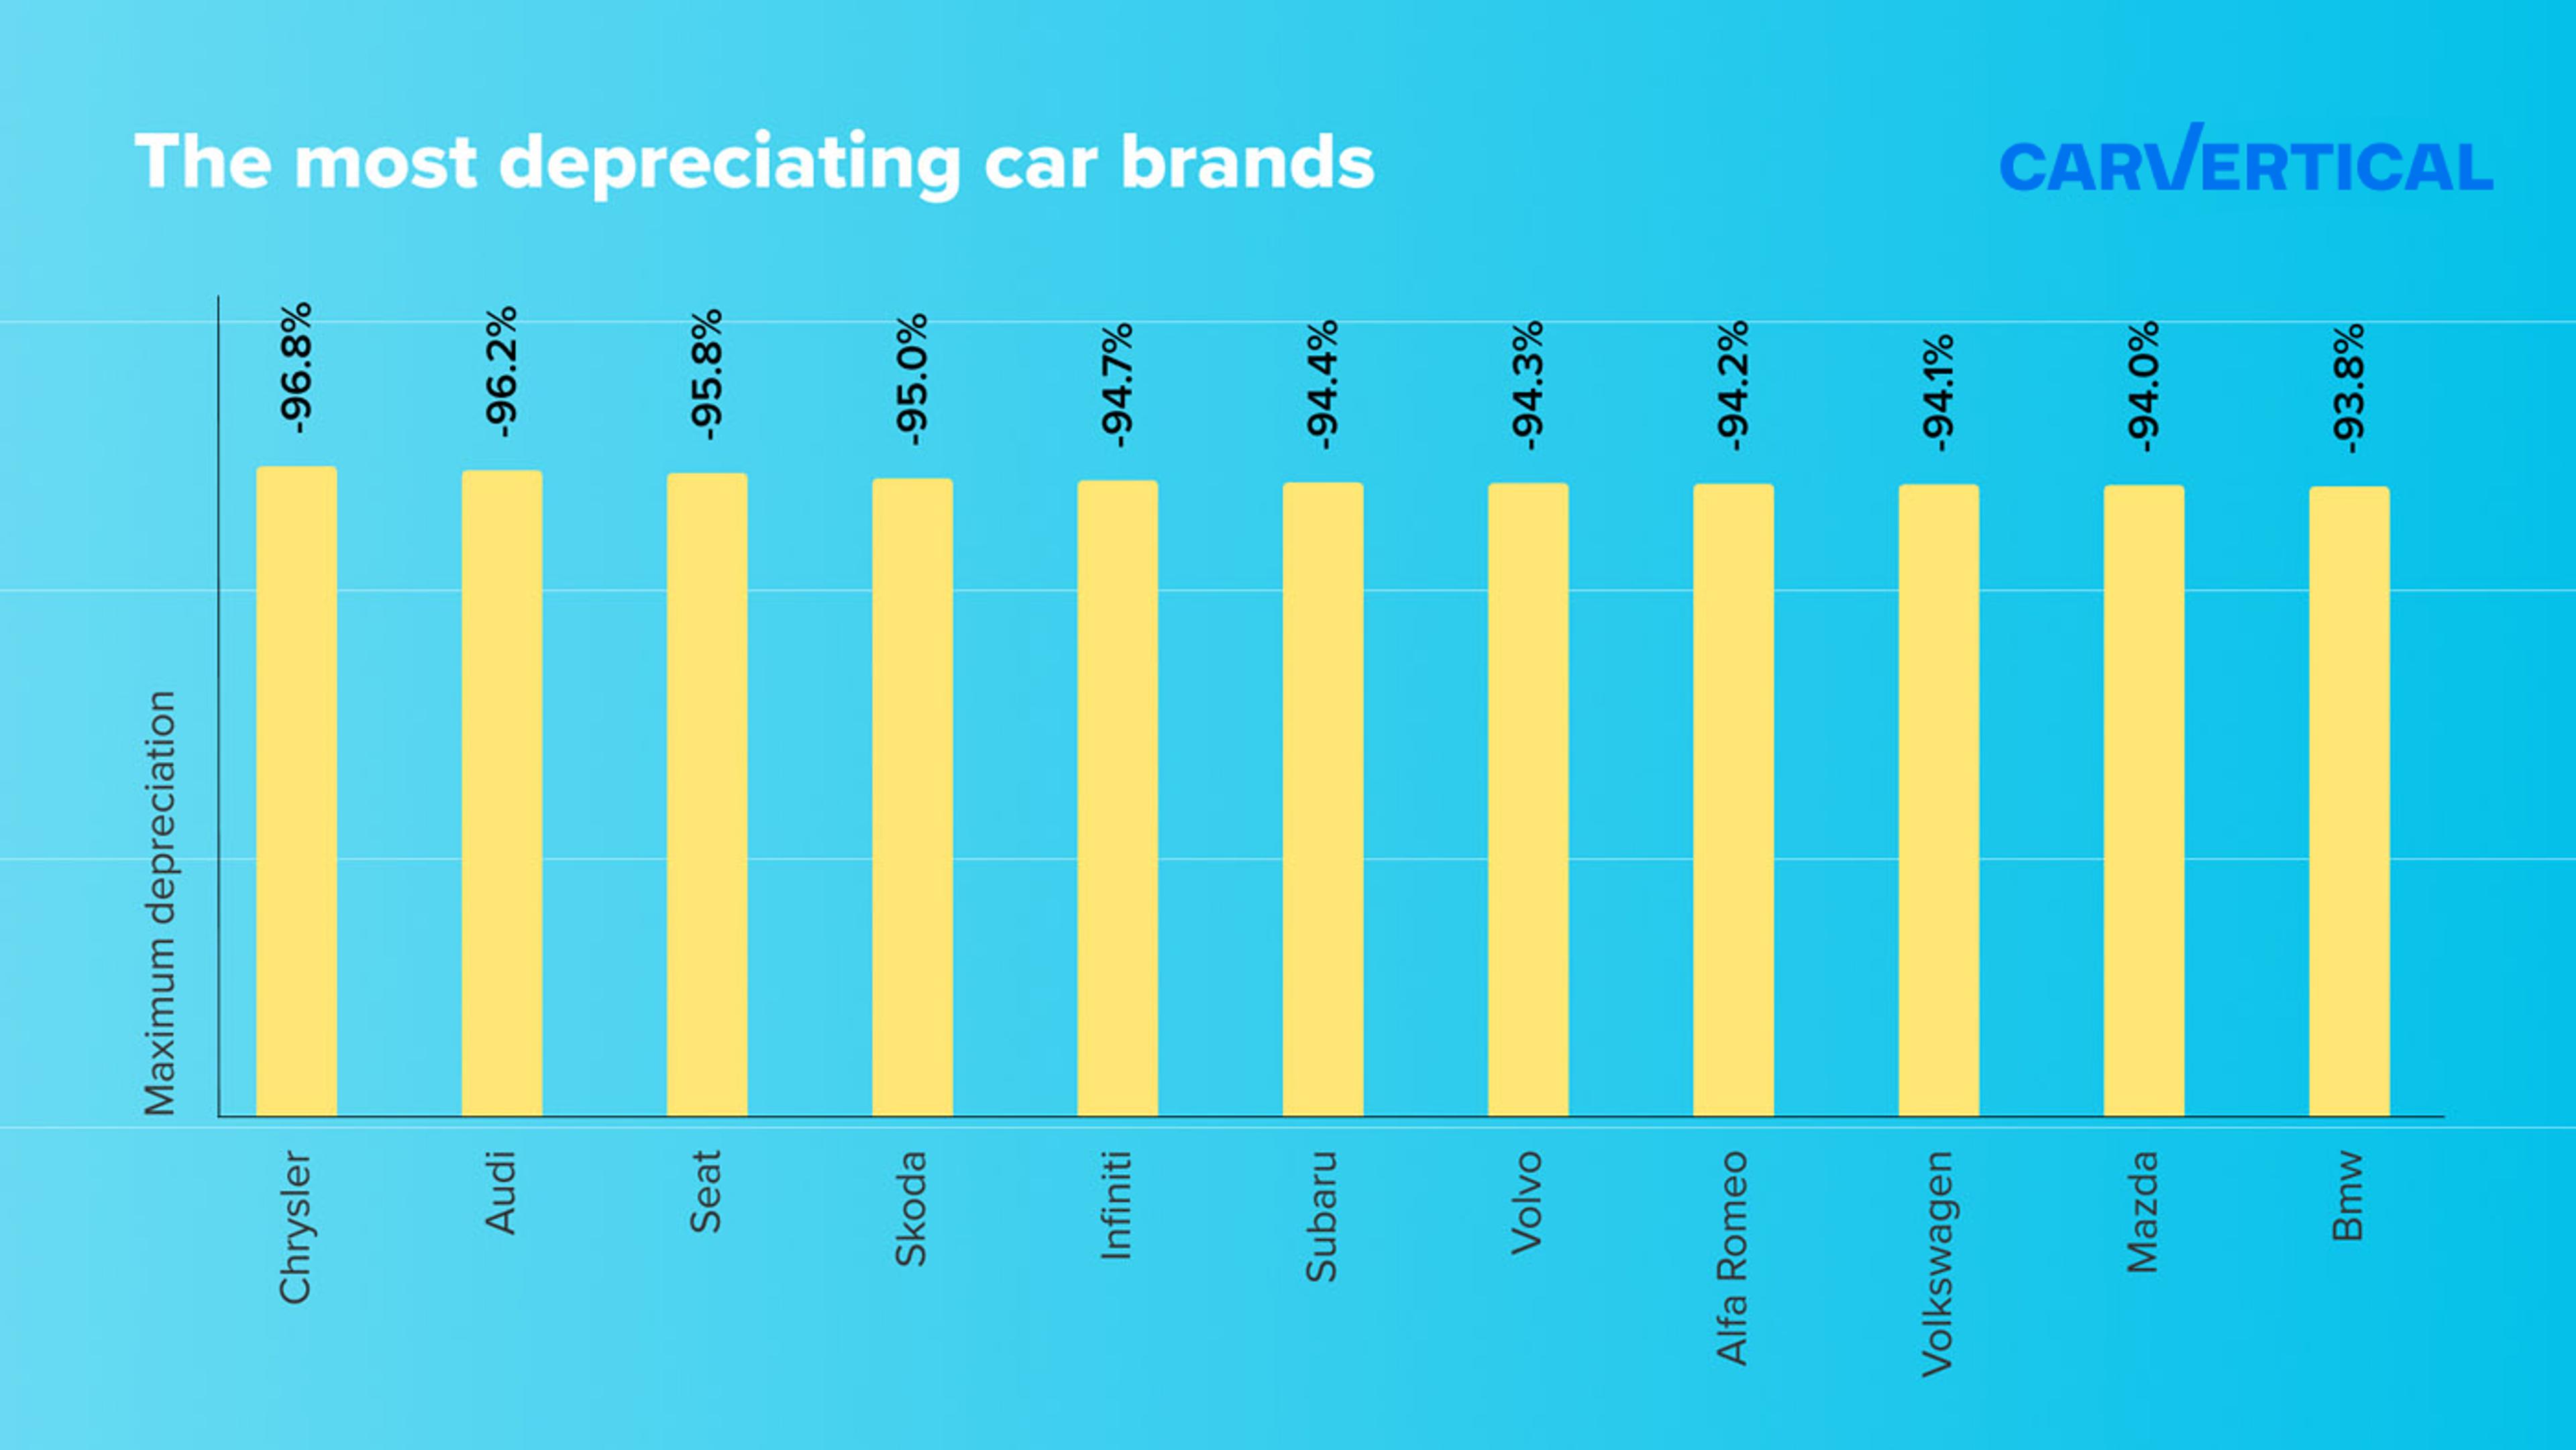 The most depreciating car brands